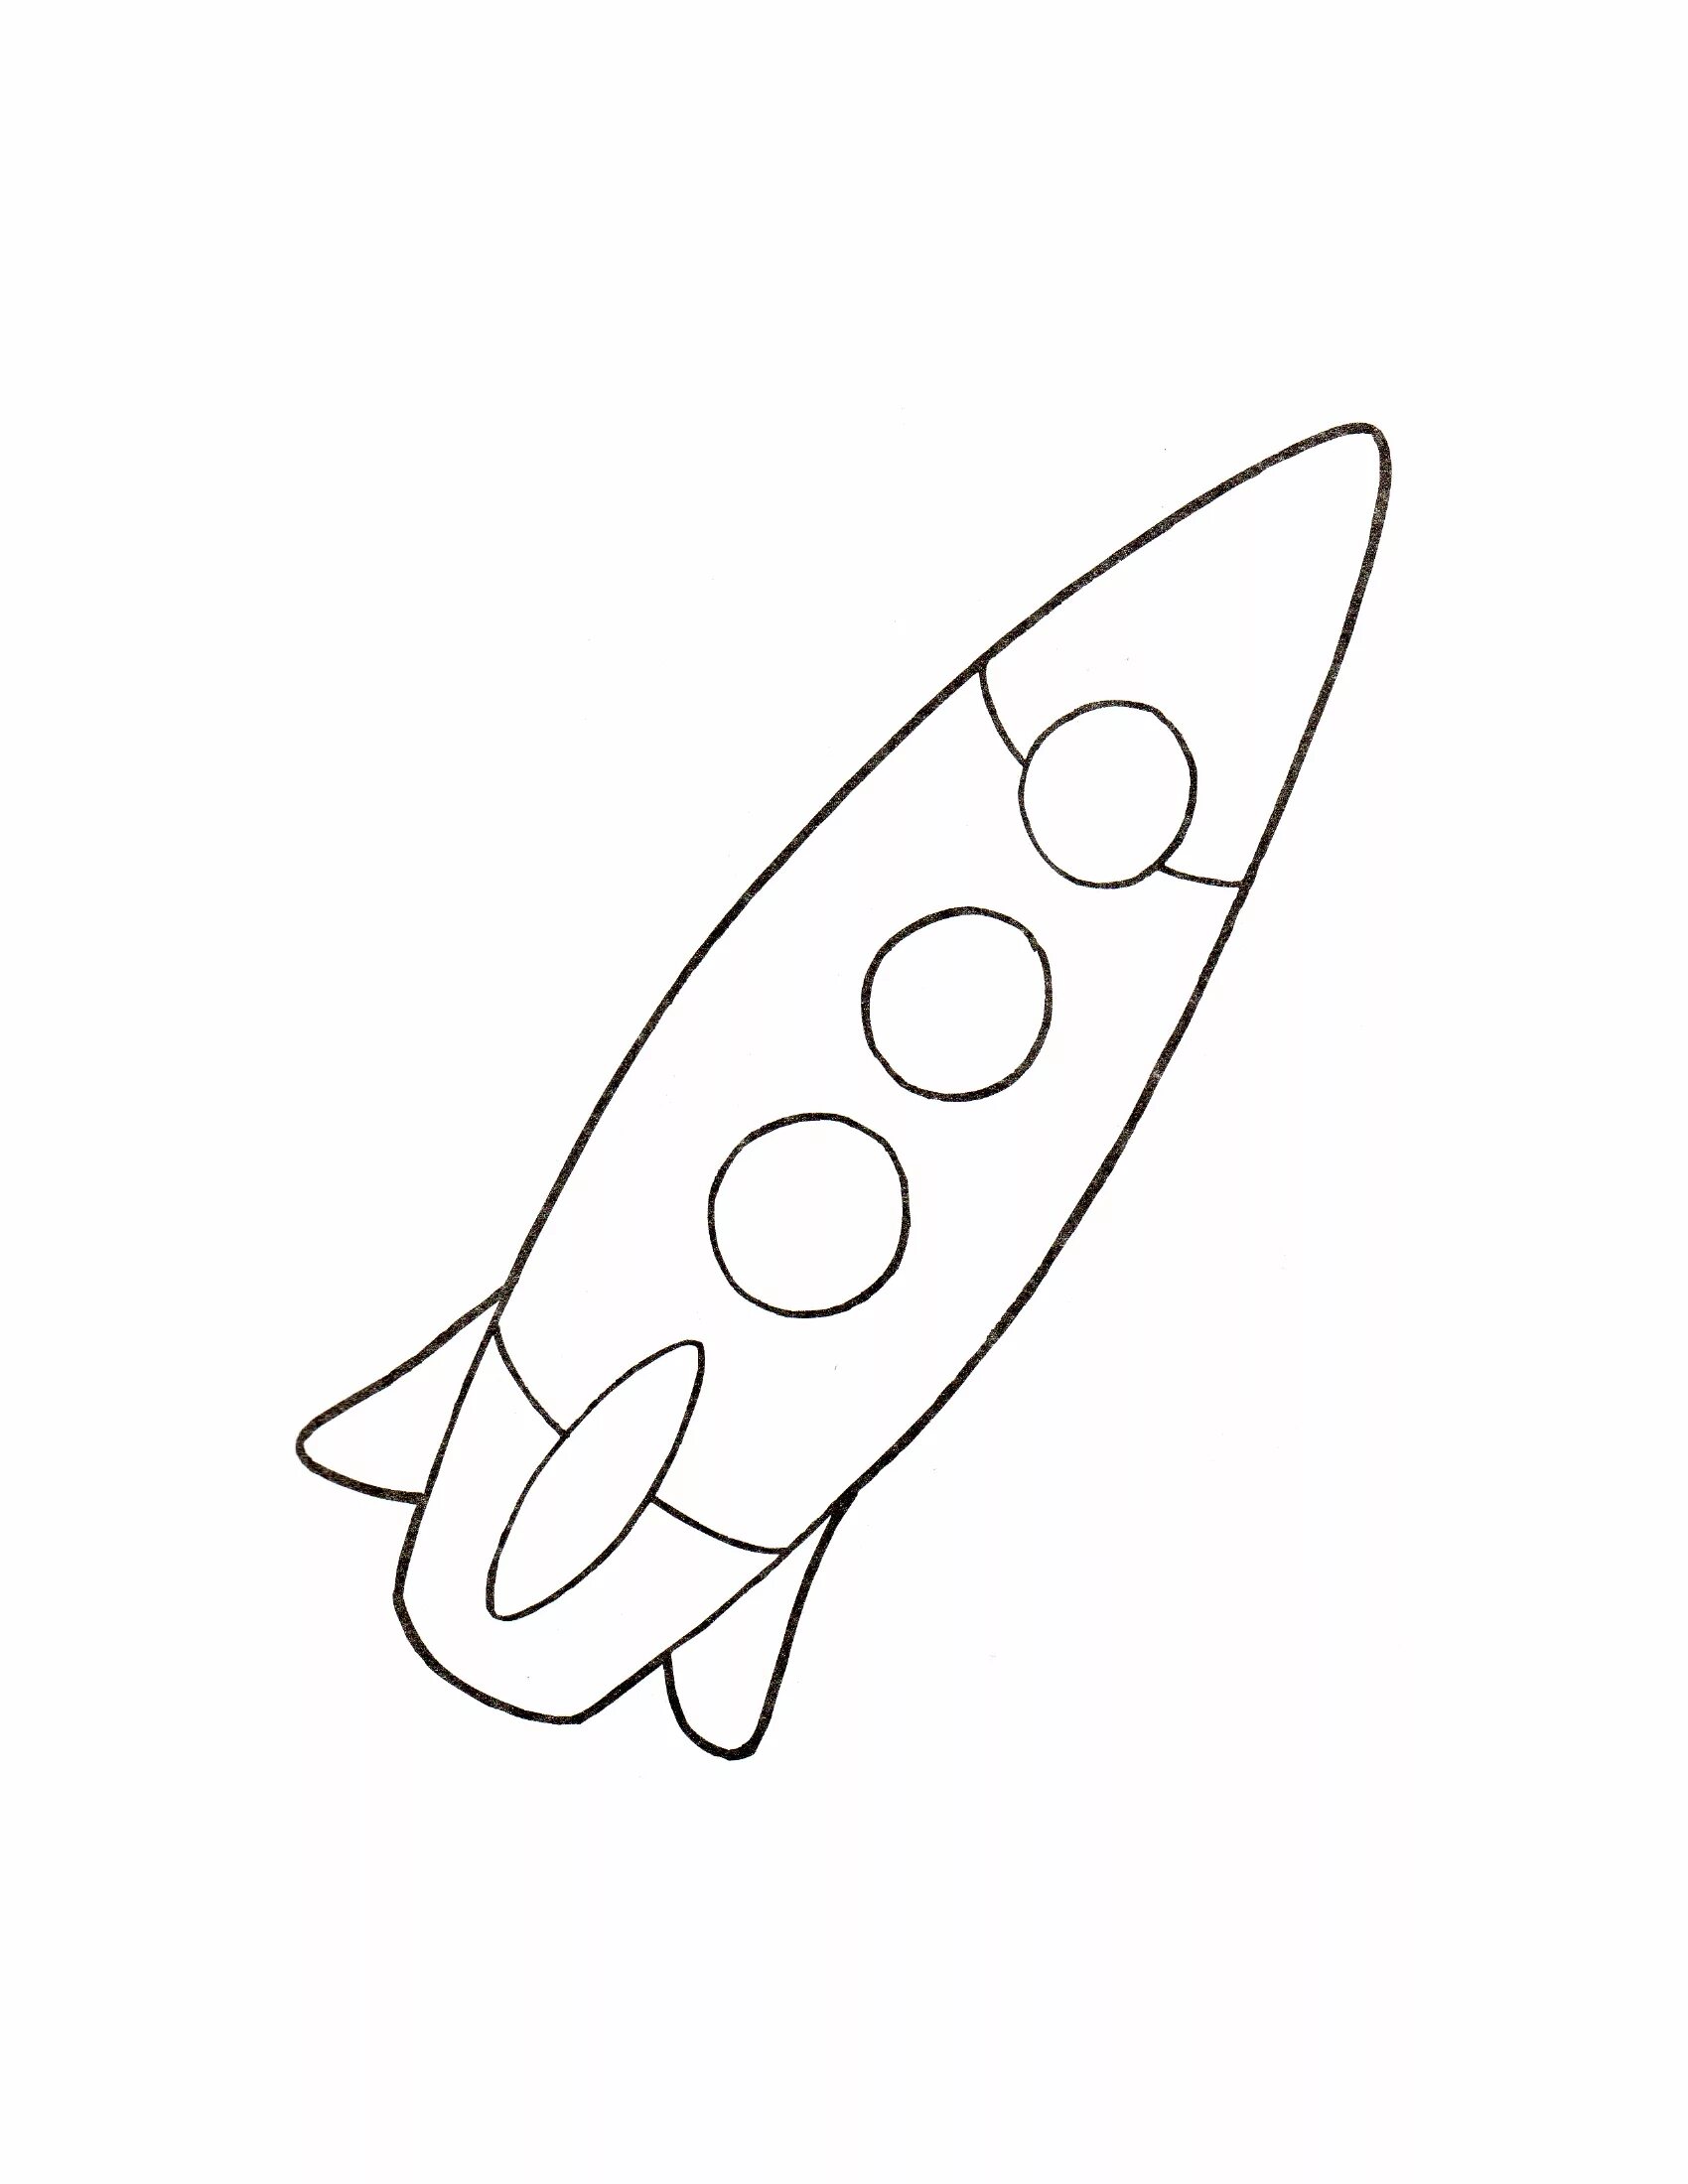 Ракета шаблон для вырезания для детей. Ракета раскраска. Ракета раскраска для детей. Космическая ракета раскраска. Раскраска ракета для детей 3-4 лет.